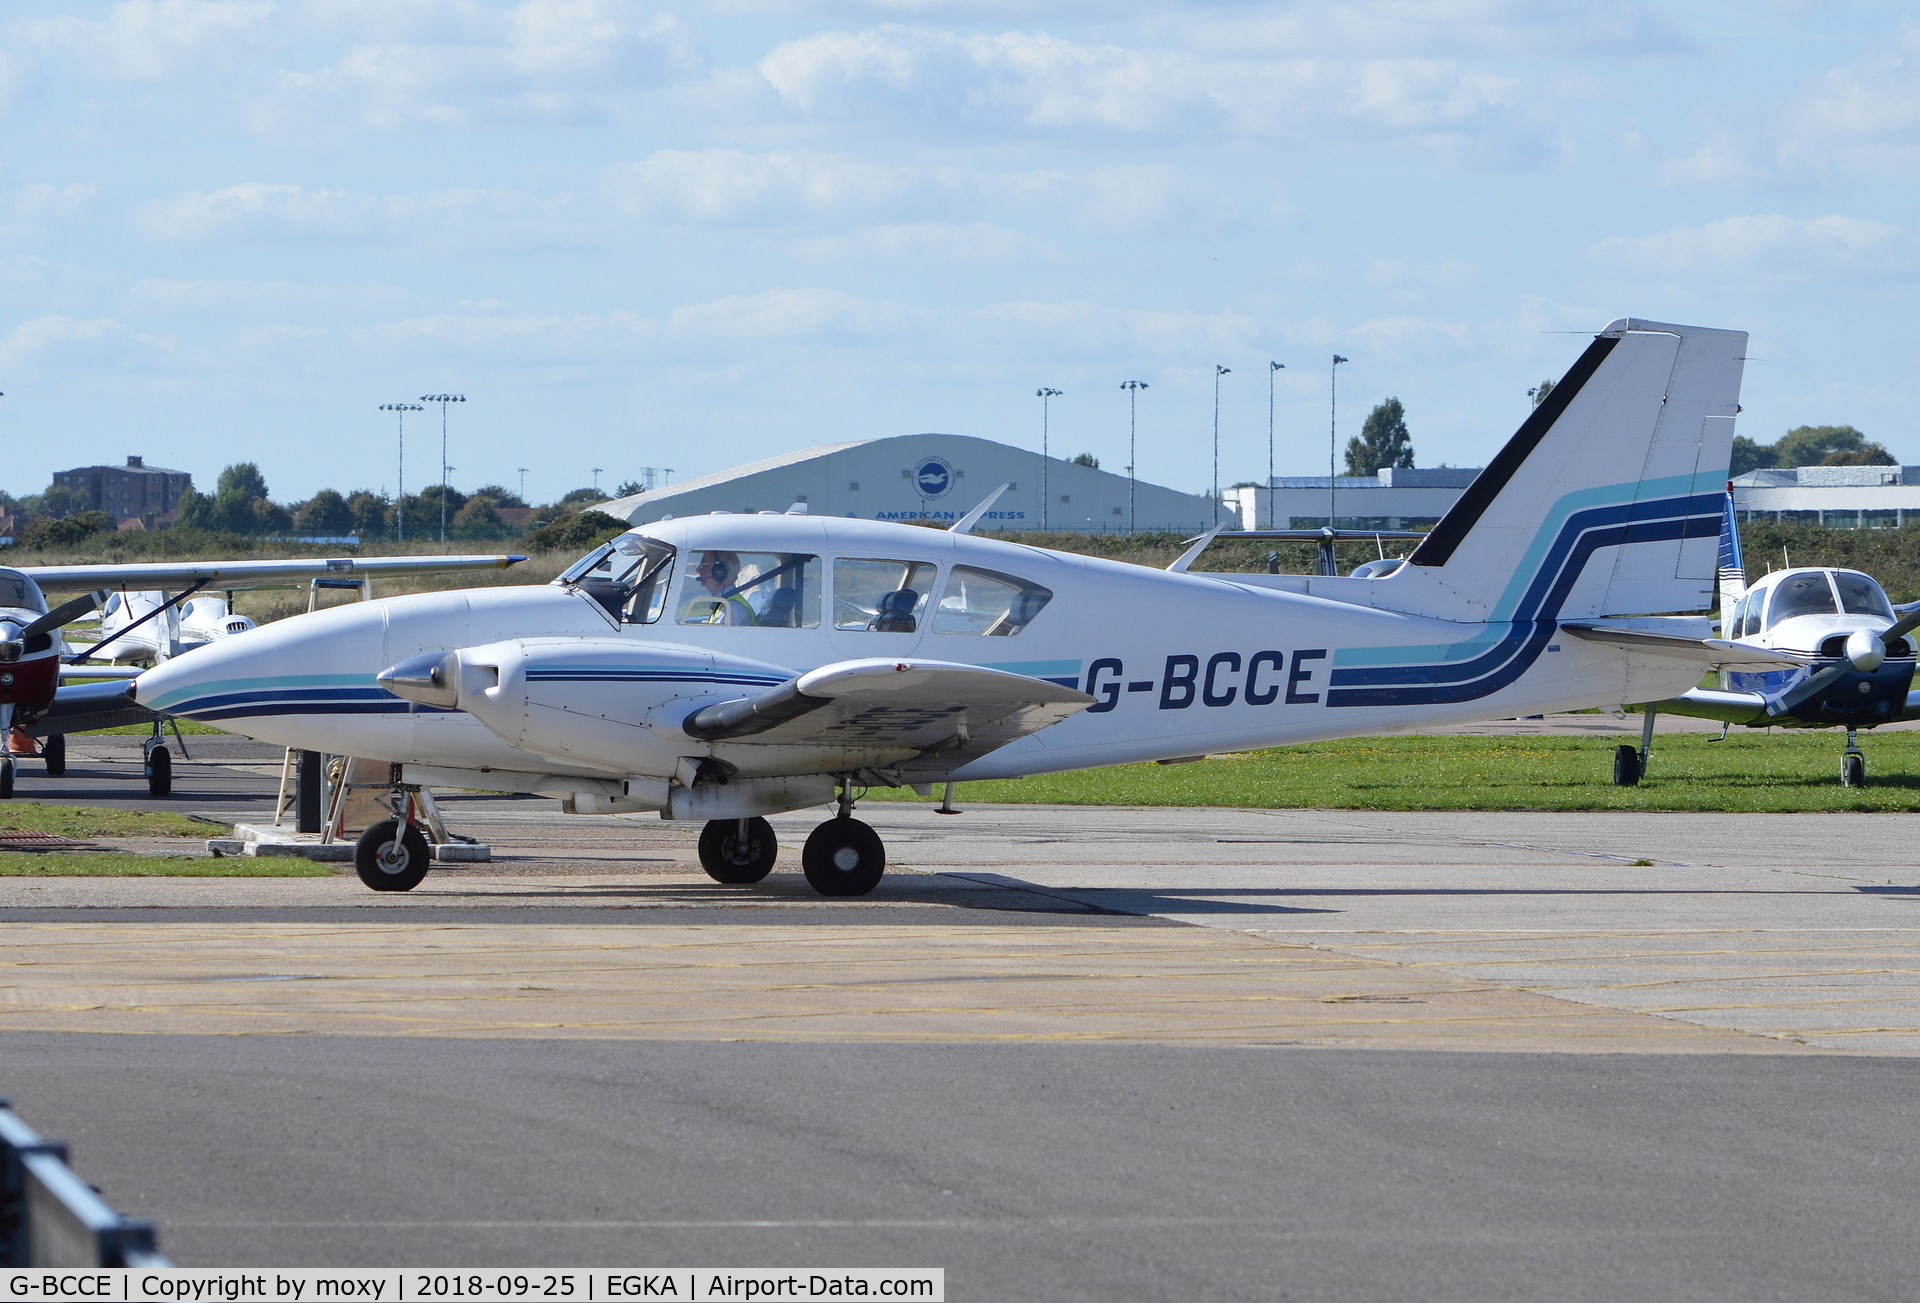 G-BCCE, 1973 Piper PA-23-250 Aztec E C/N 27-7405282, Piper PA-23-250 Aztec at Shoreham. Ex N40544